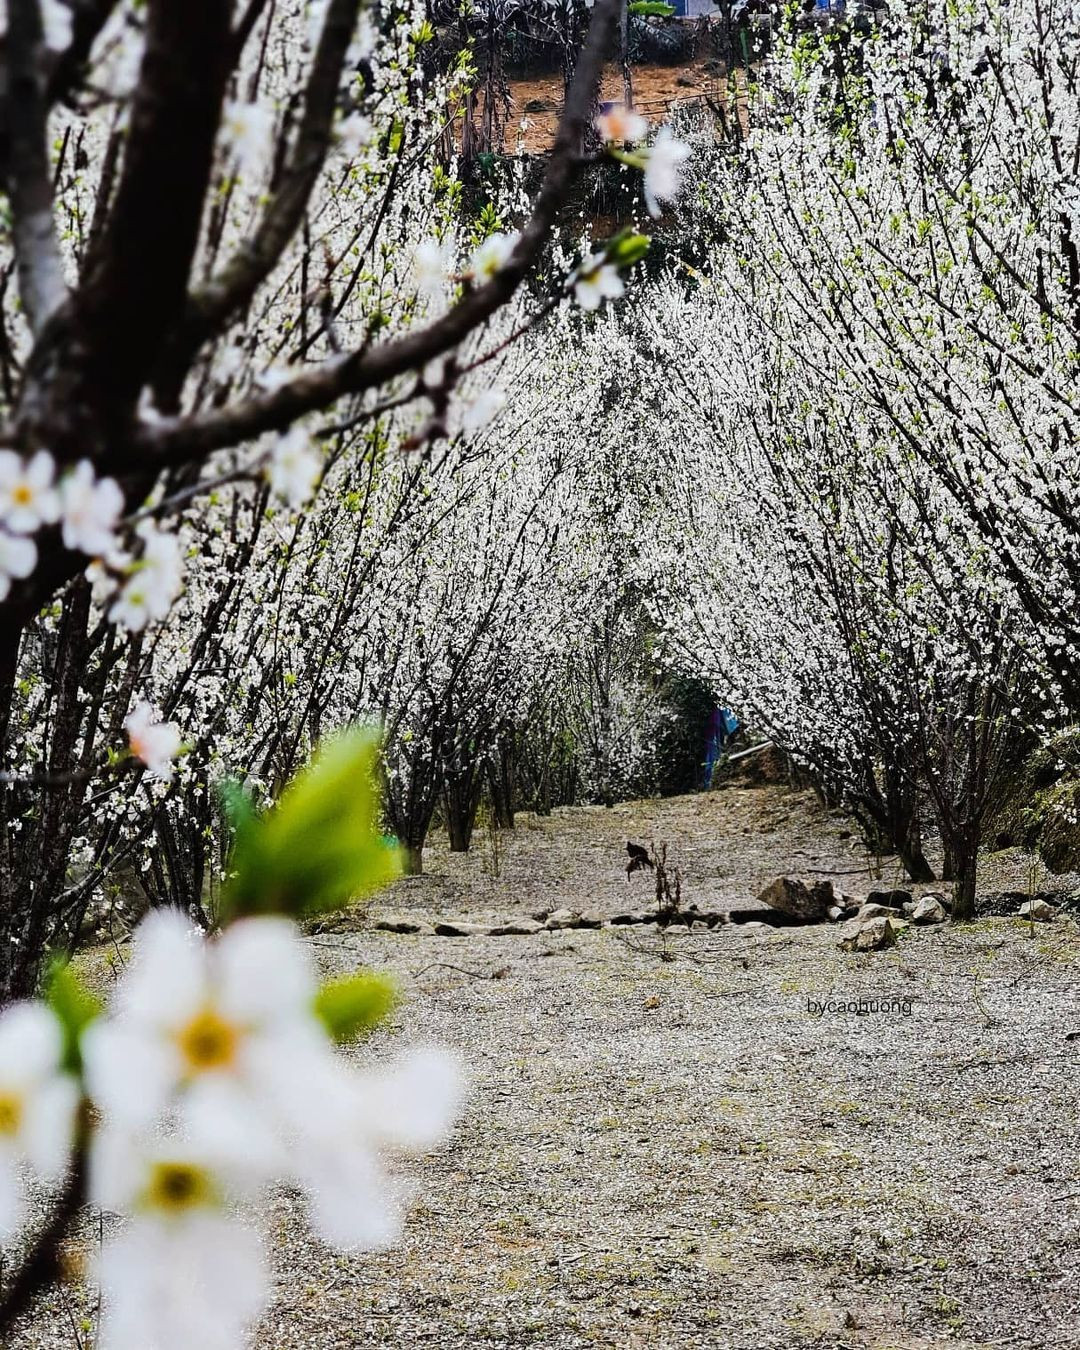 Mùa hoa: Mê mẩn ngắm ‘bông tuyết trắng’ nở rợp trời rẻo cao ảo diệu như cõi tiên - 11